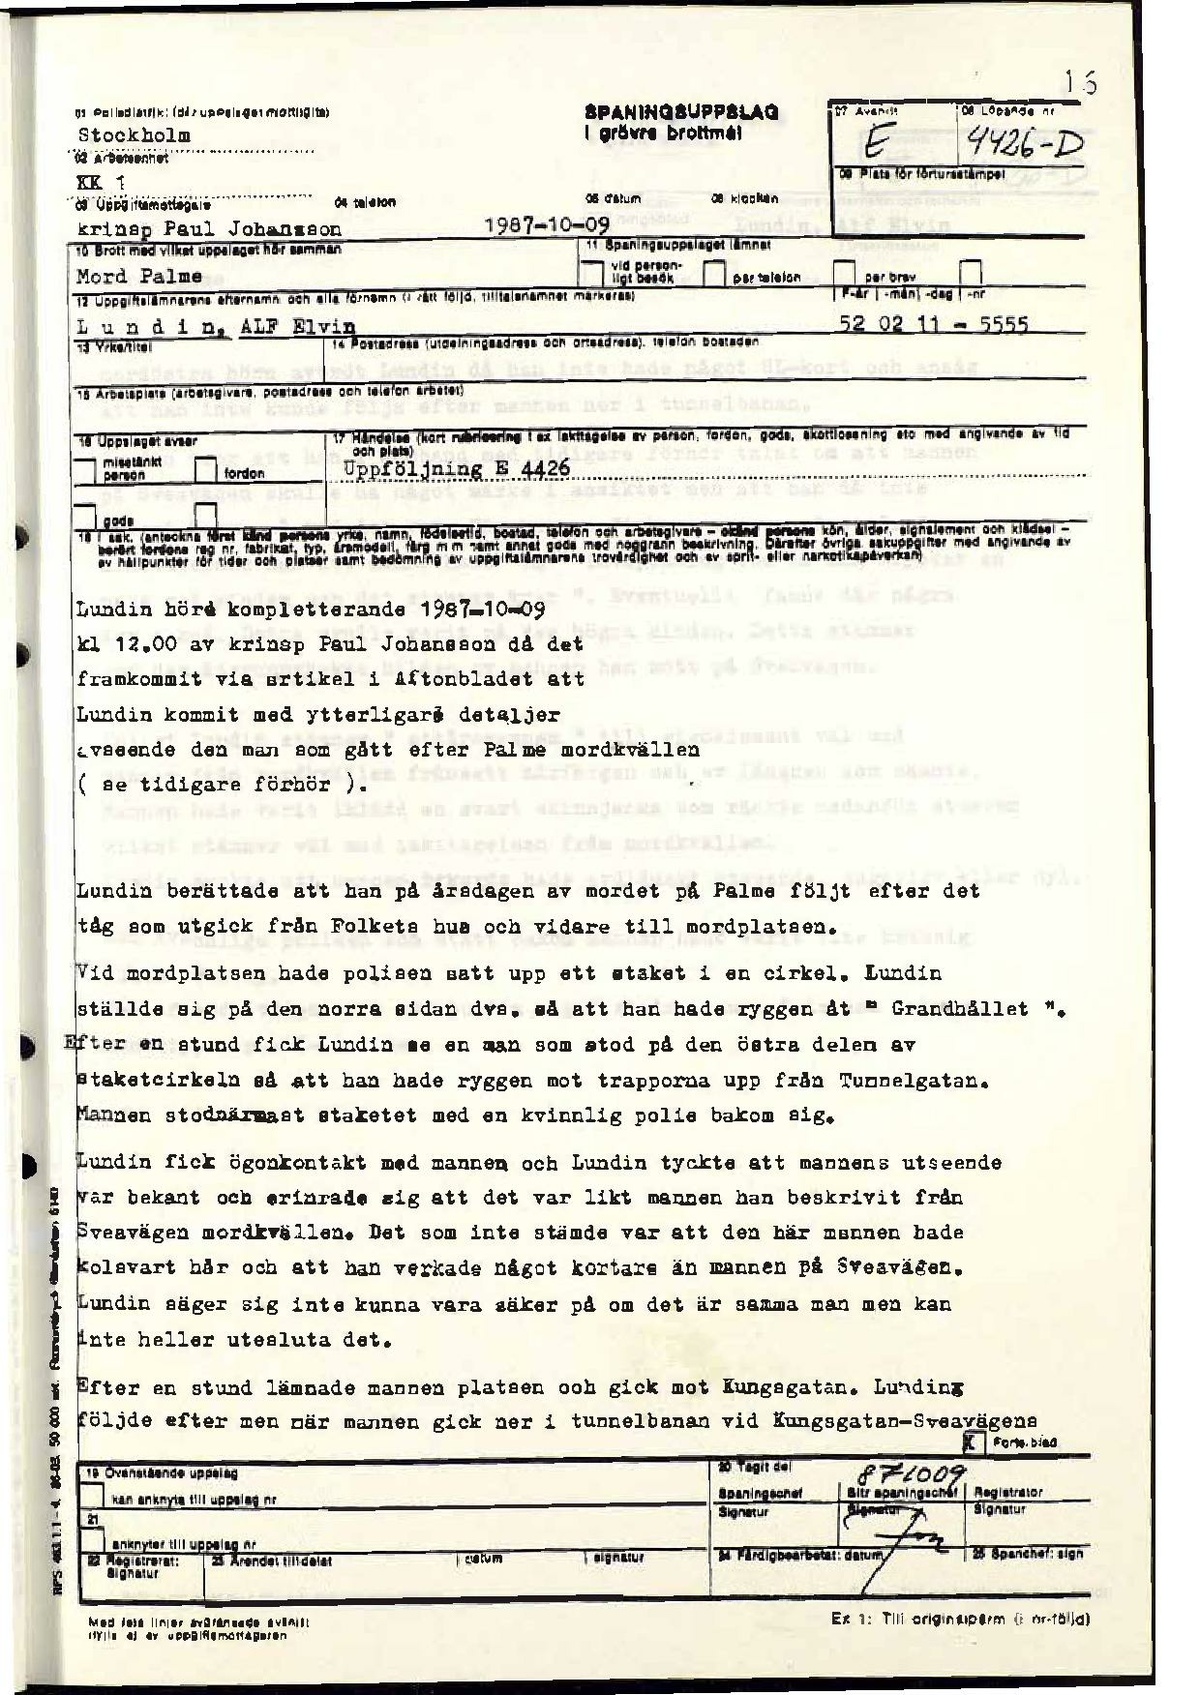 Pol-1987-10-09 1200 E4426-00-D Förhör med Alf Lundin med ytterligare detaljer om man som efterföljer makarna Palme.pdf